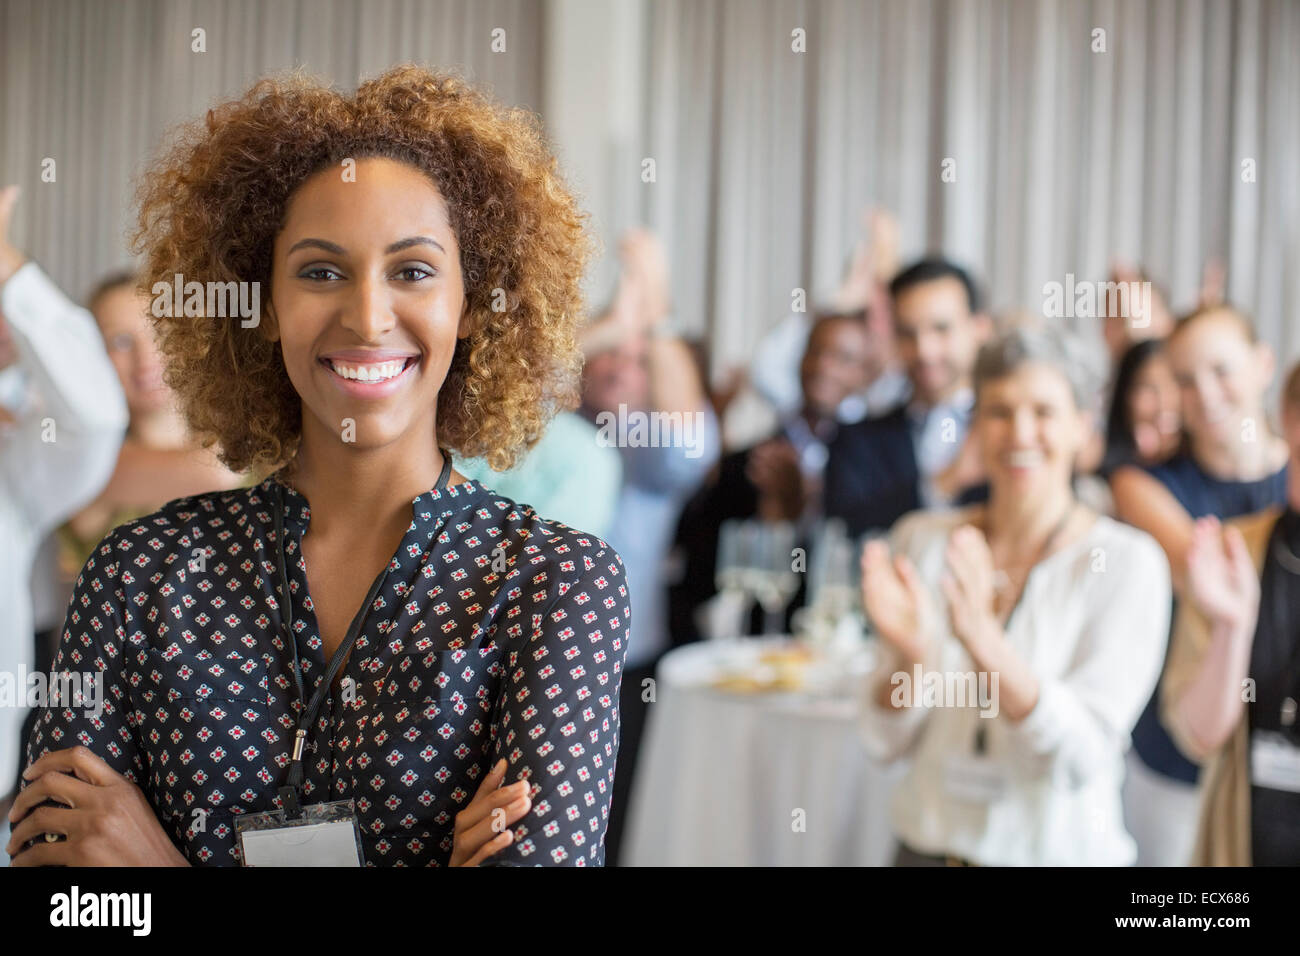 Retrato de mujer sonriente en la sala con la gente aplaudiendo en segundo plano. Foto de stock